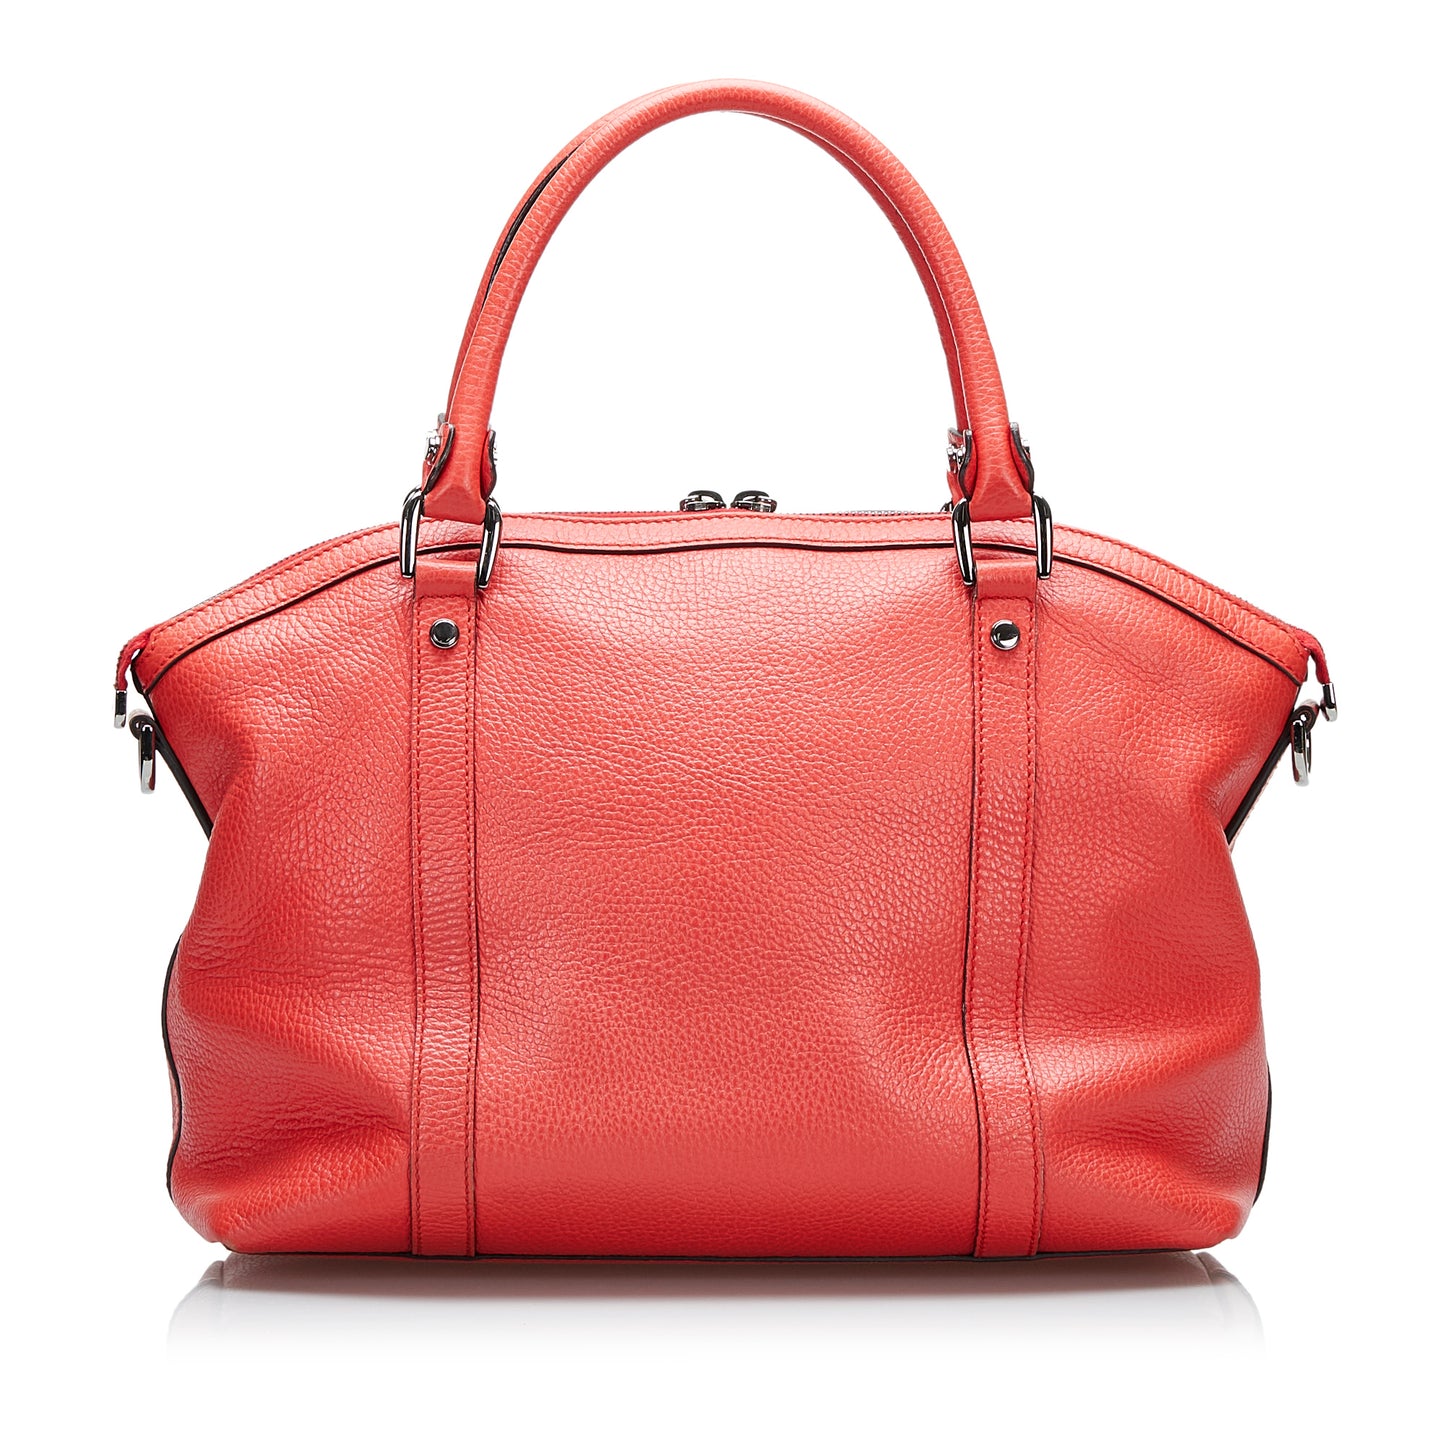 GG Charm Dome Leather Handbag